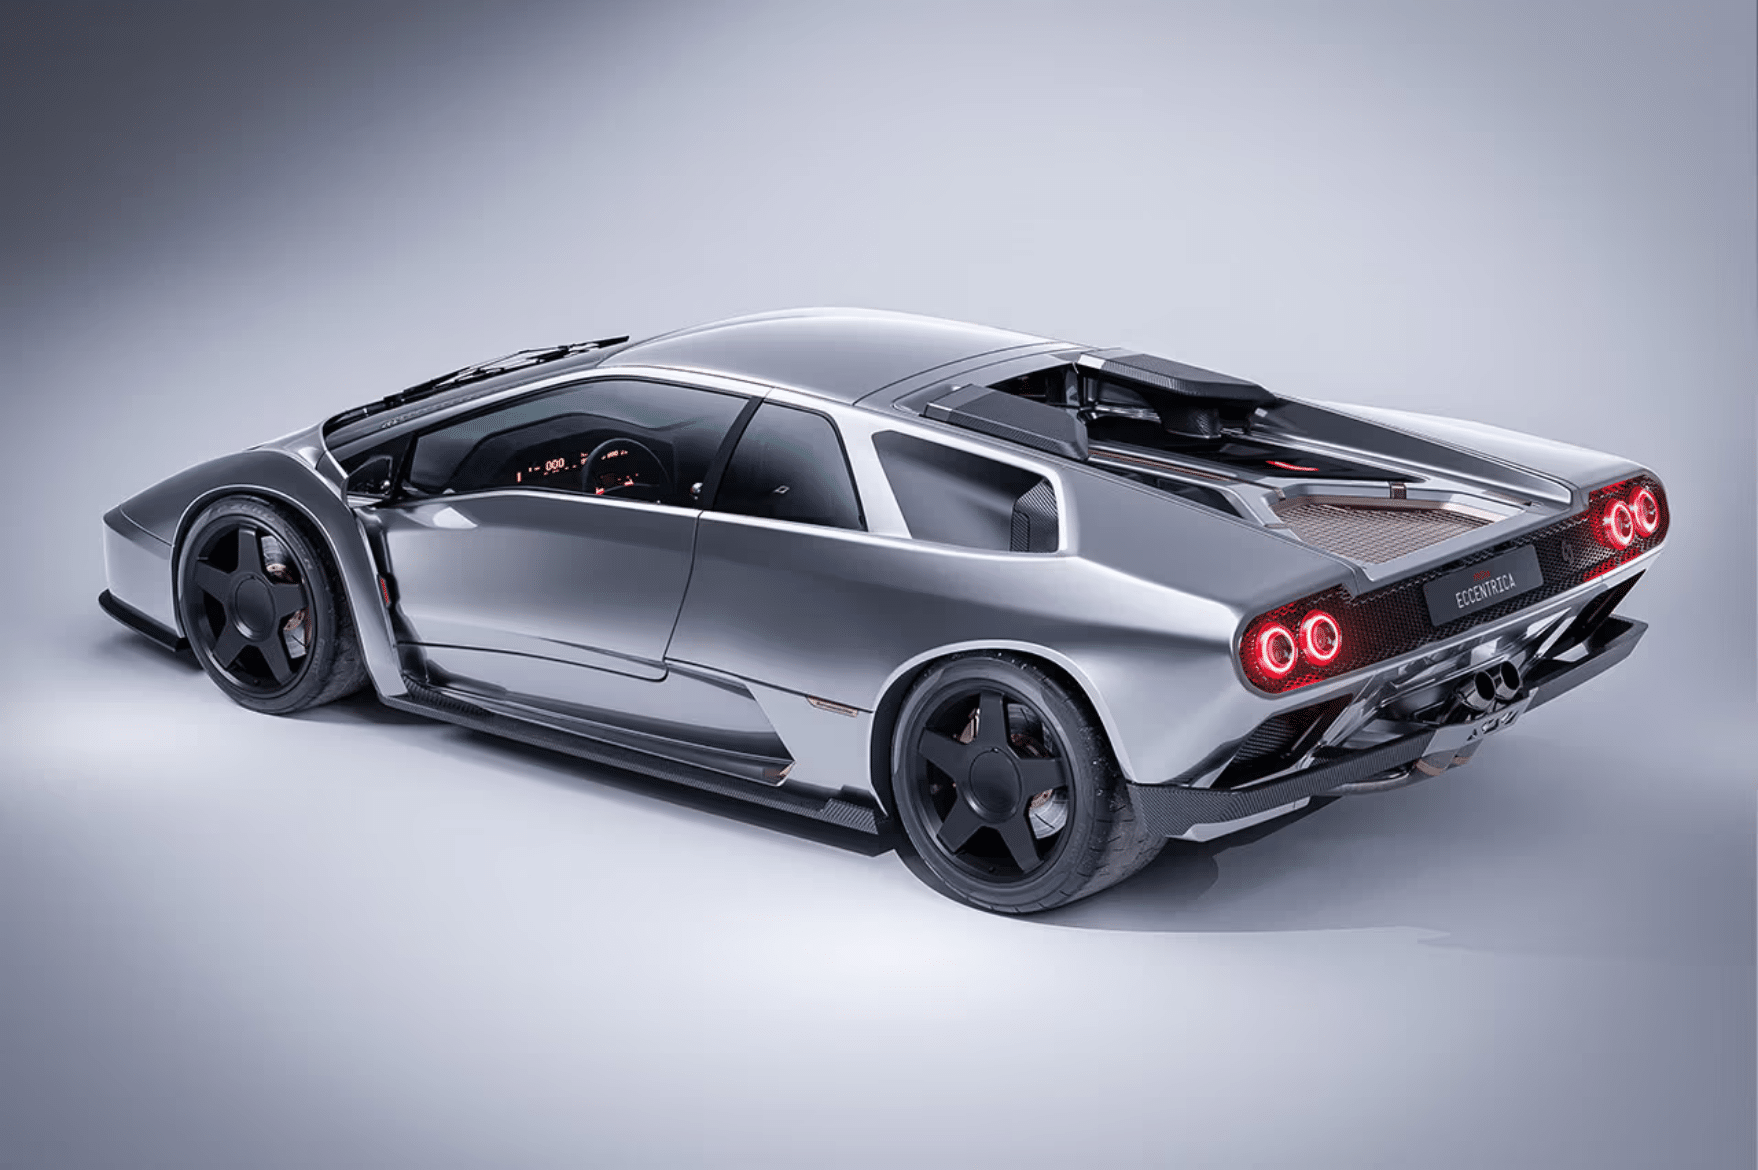 Lamborghini Diablo "Eccentrica" restomod